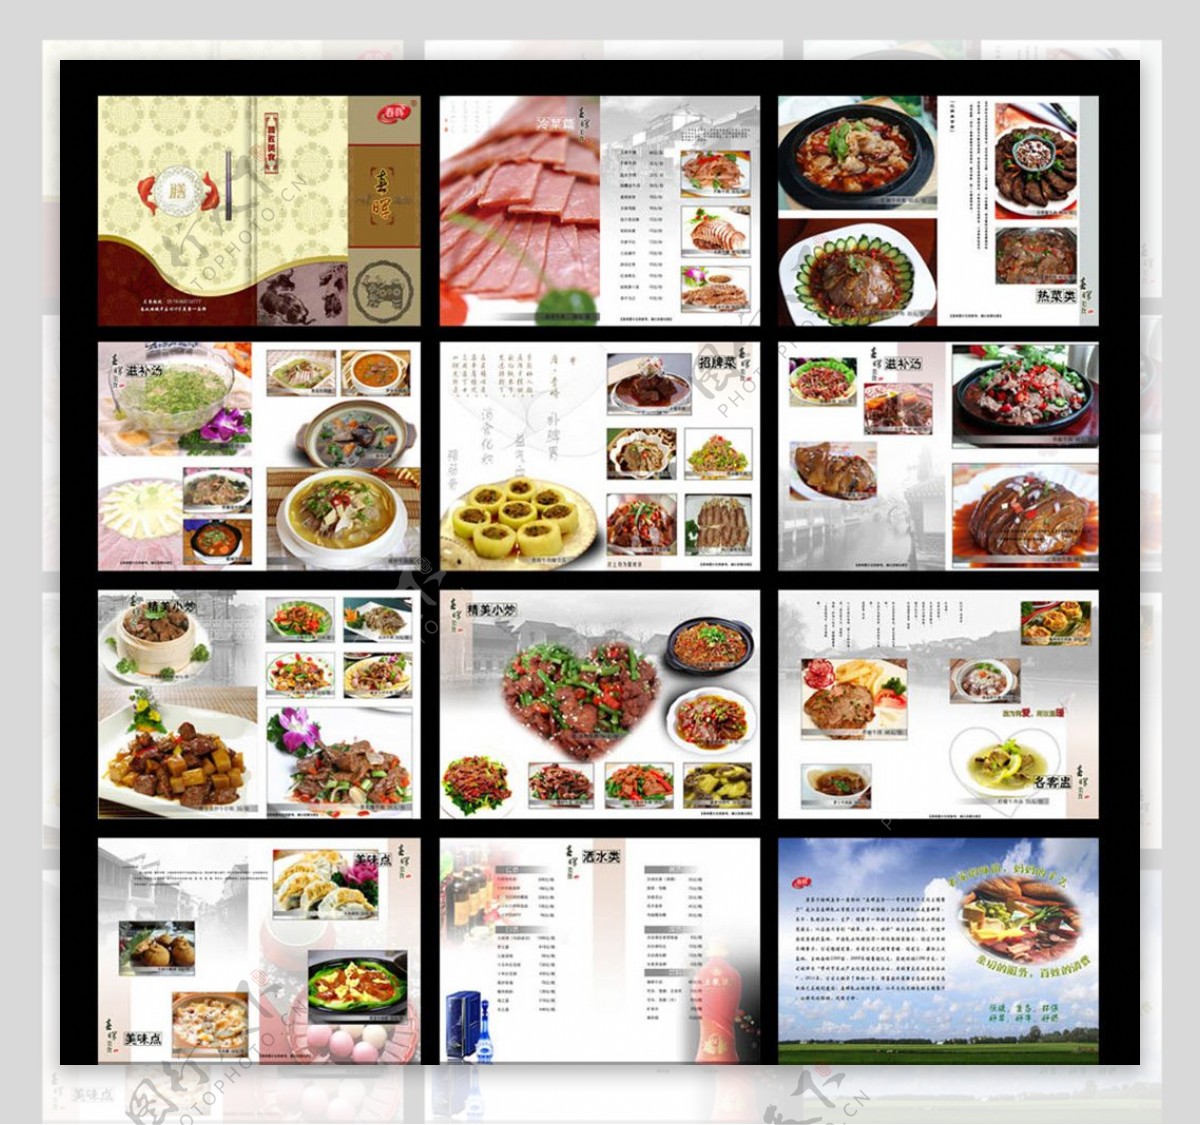 菜谱菜单餐厅画册图片